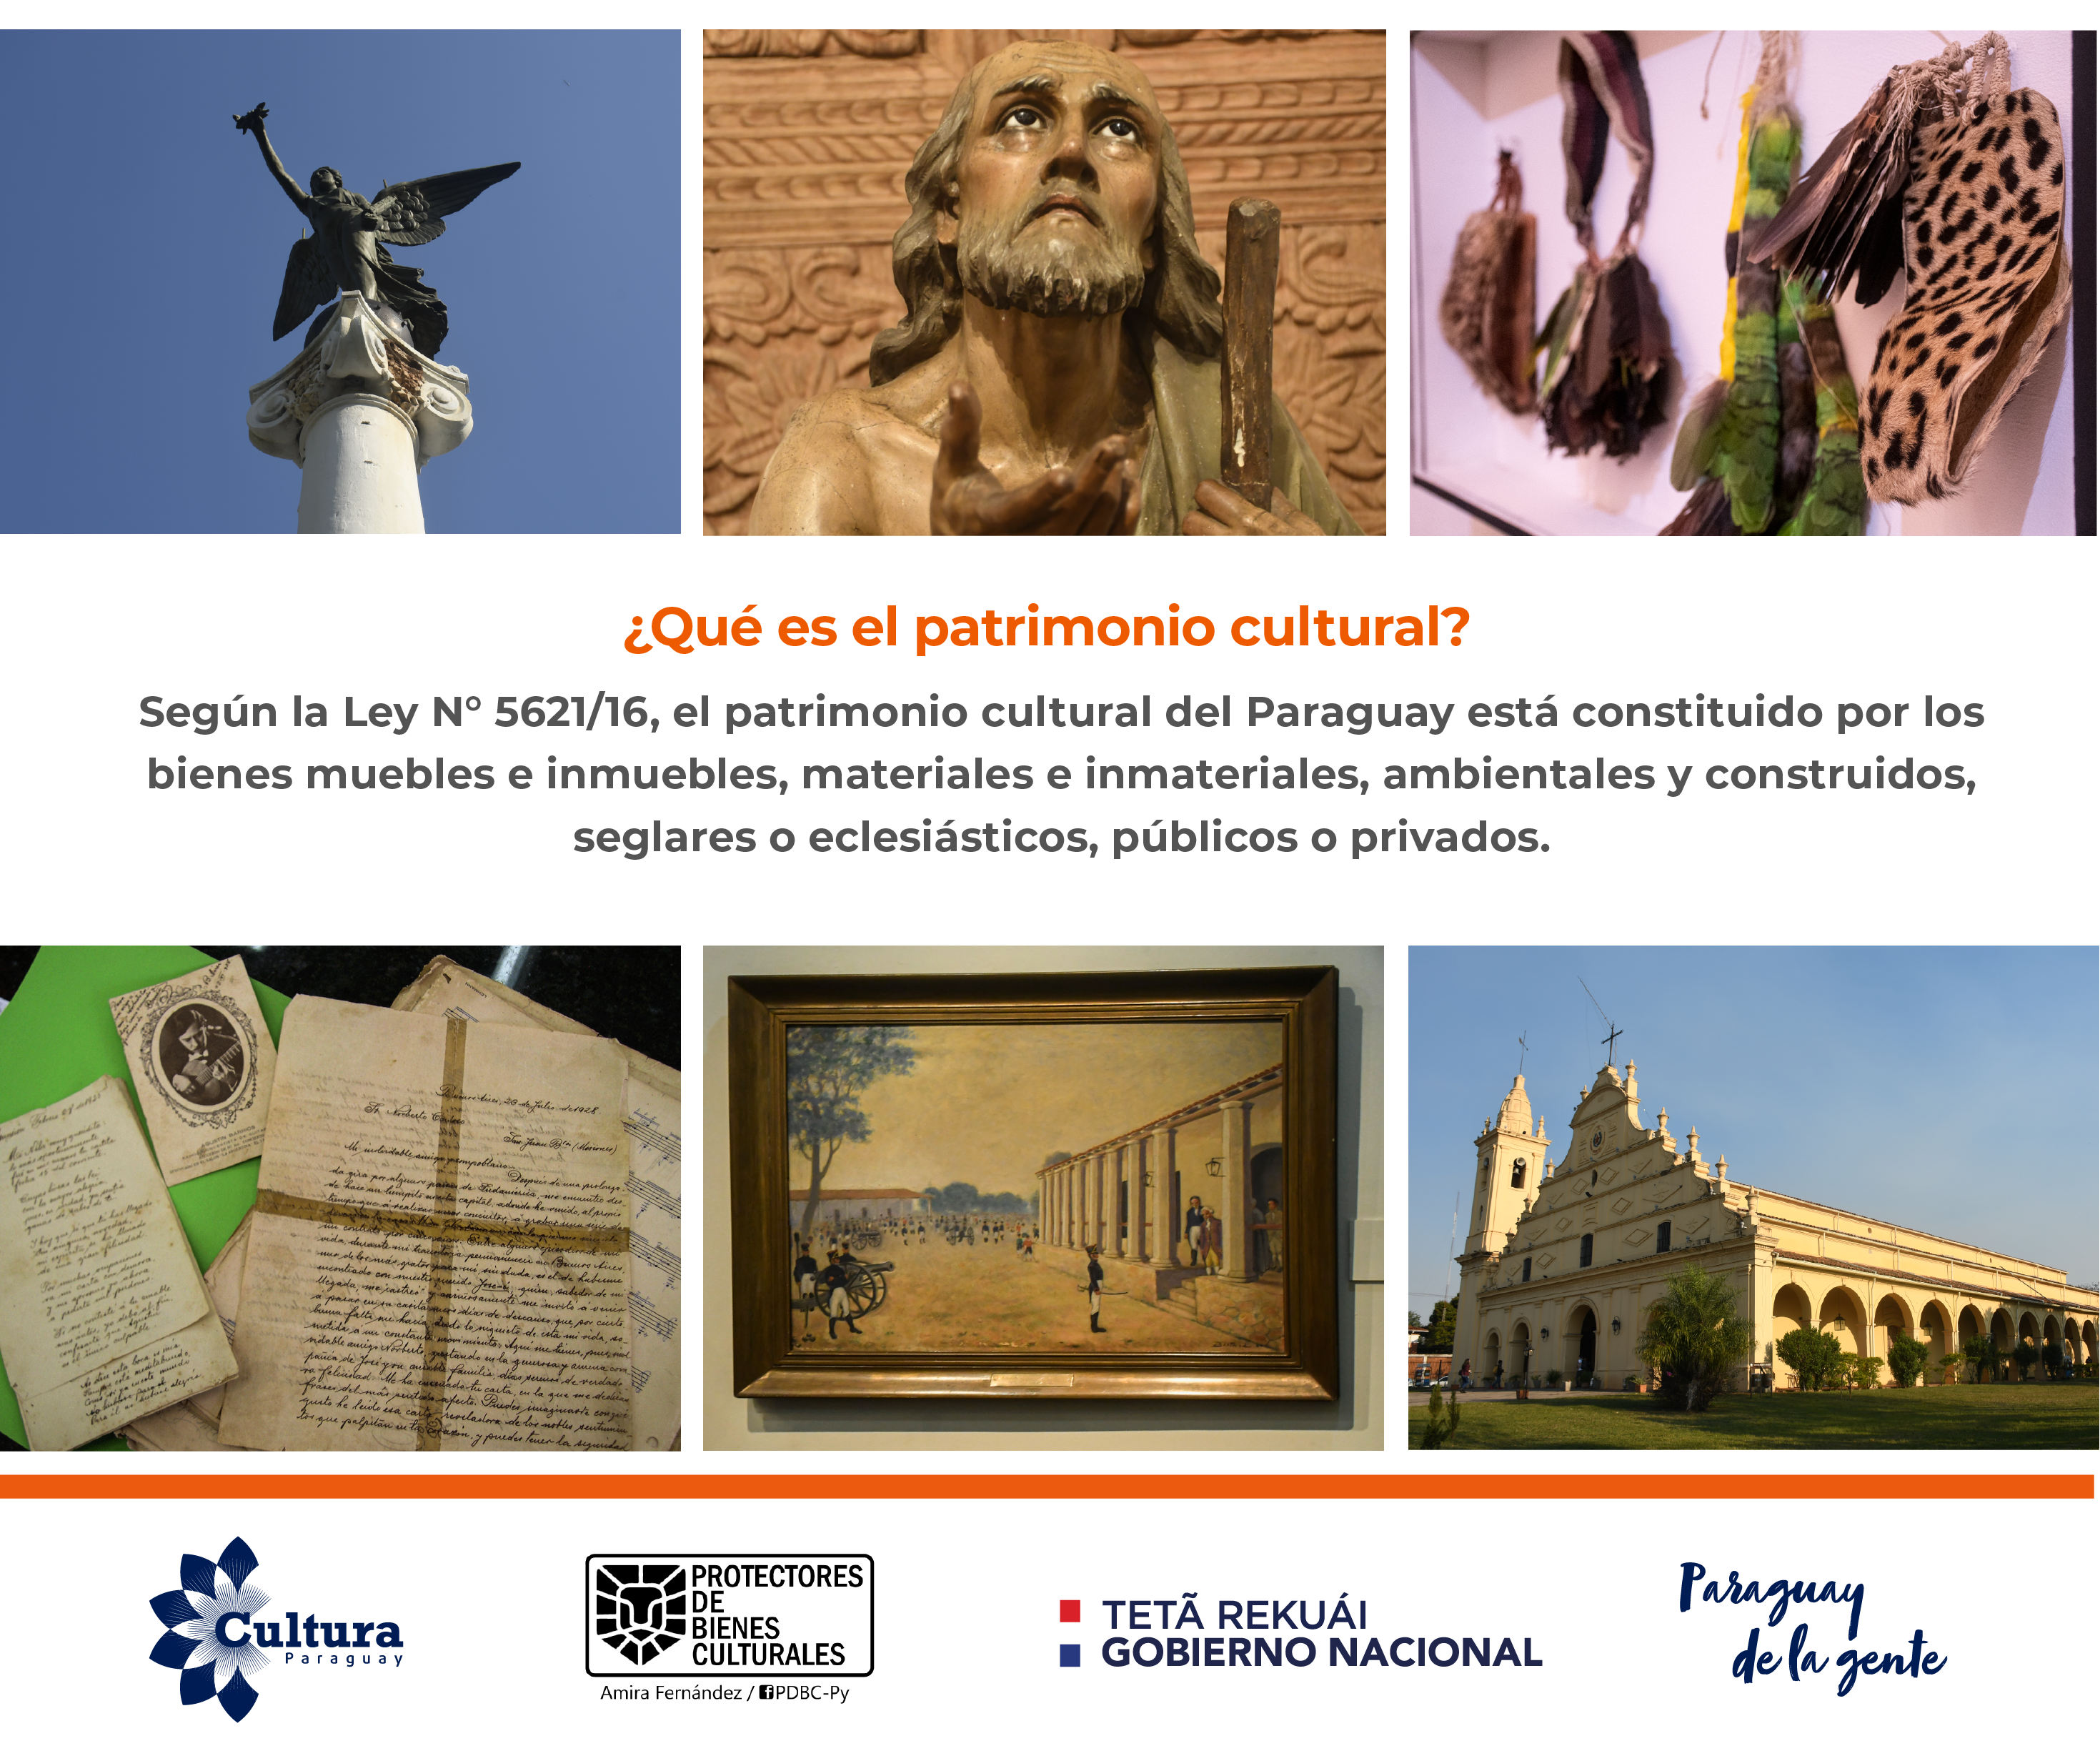 Patrimonios culturales: inicia campaña de concientización sobre cuidado y prevención de hechos ilícitos imagen